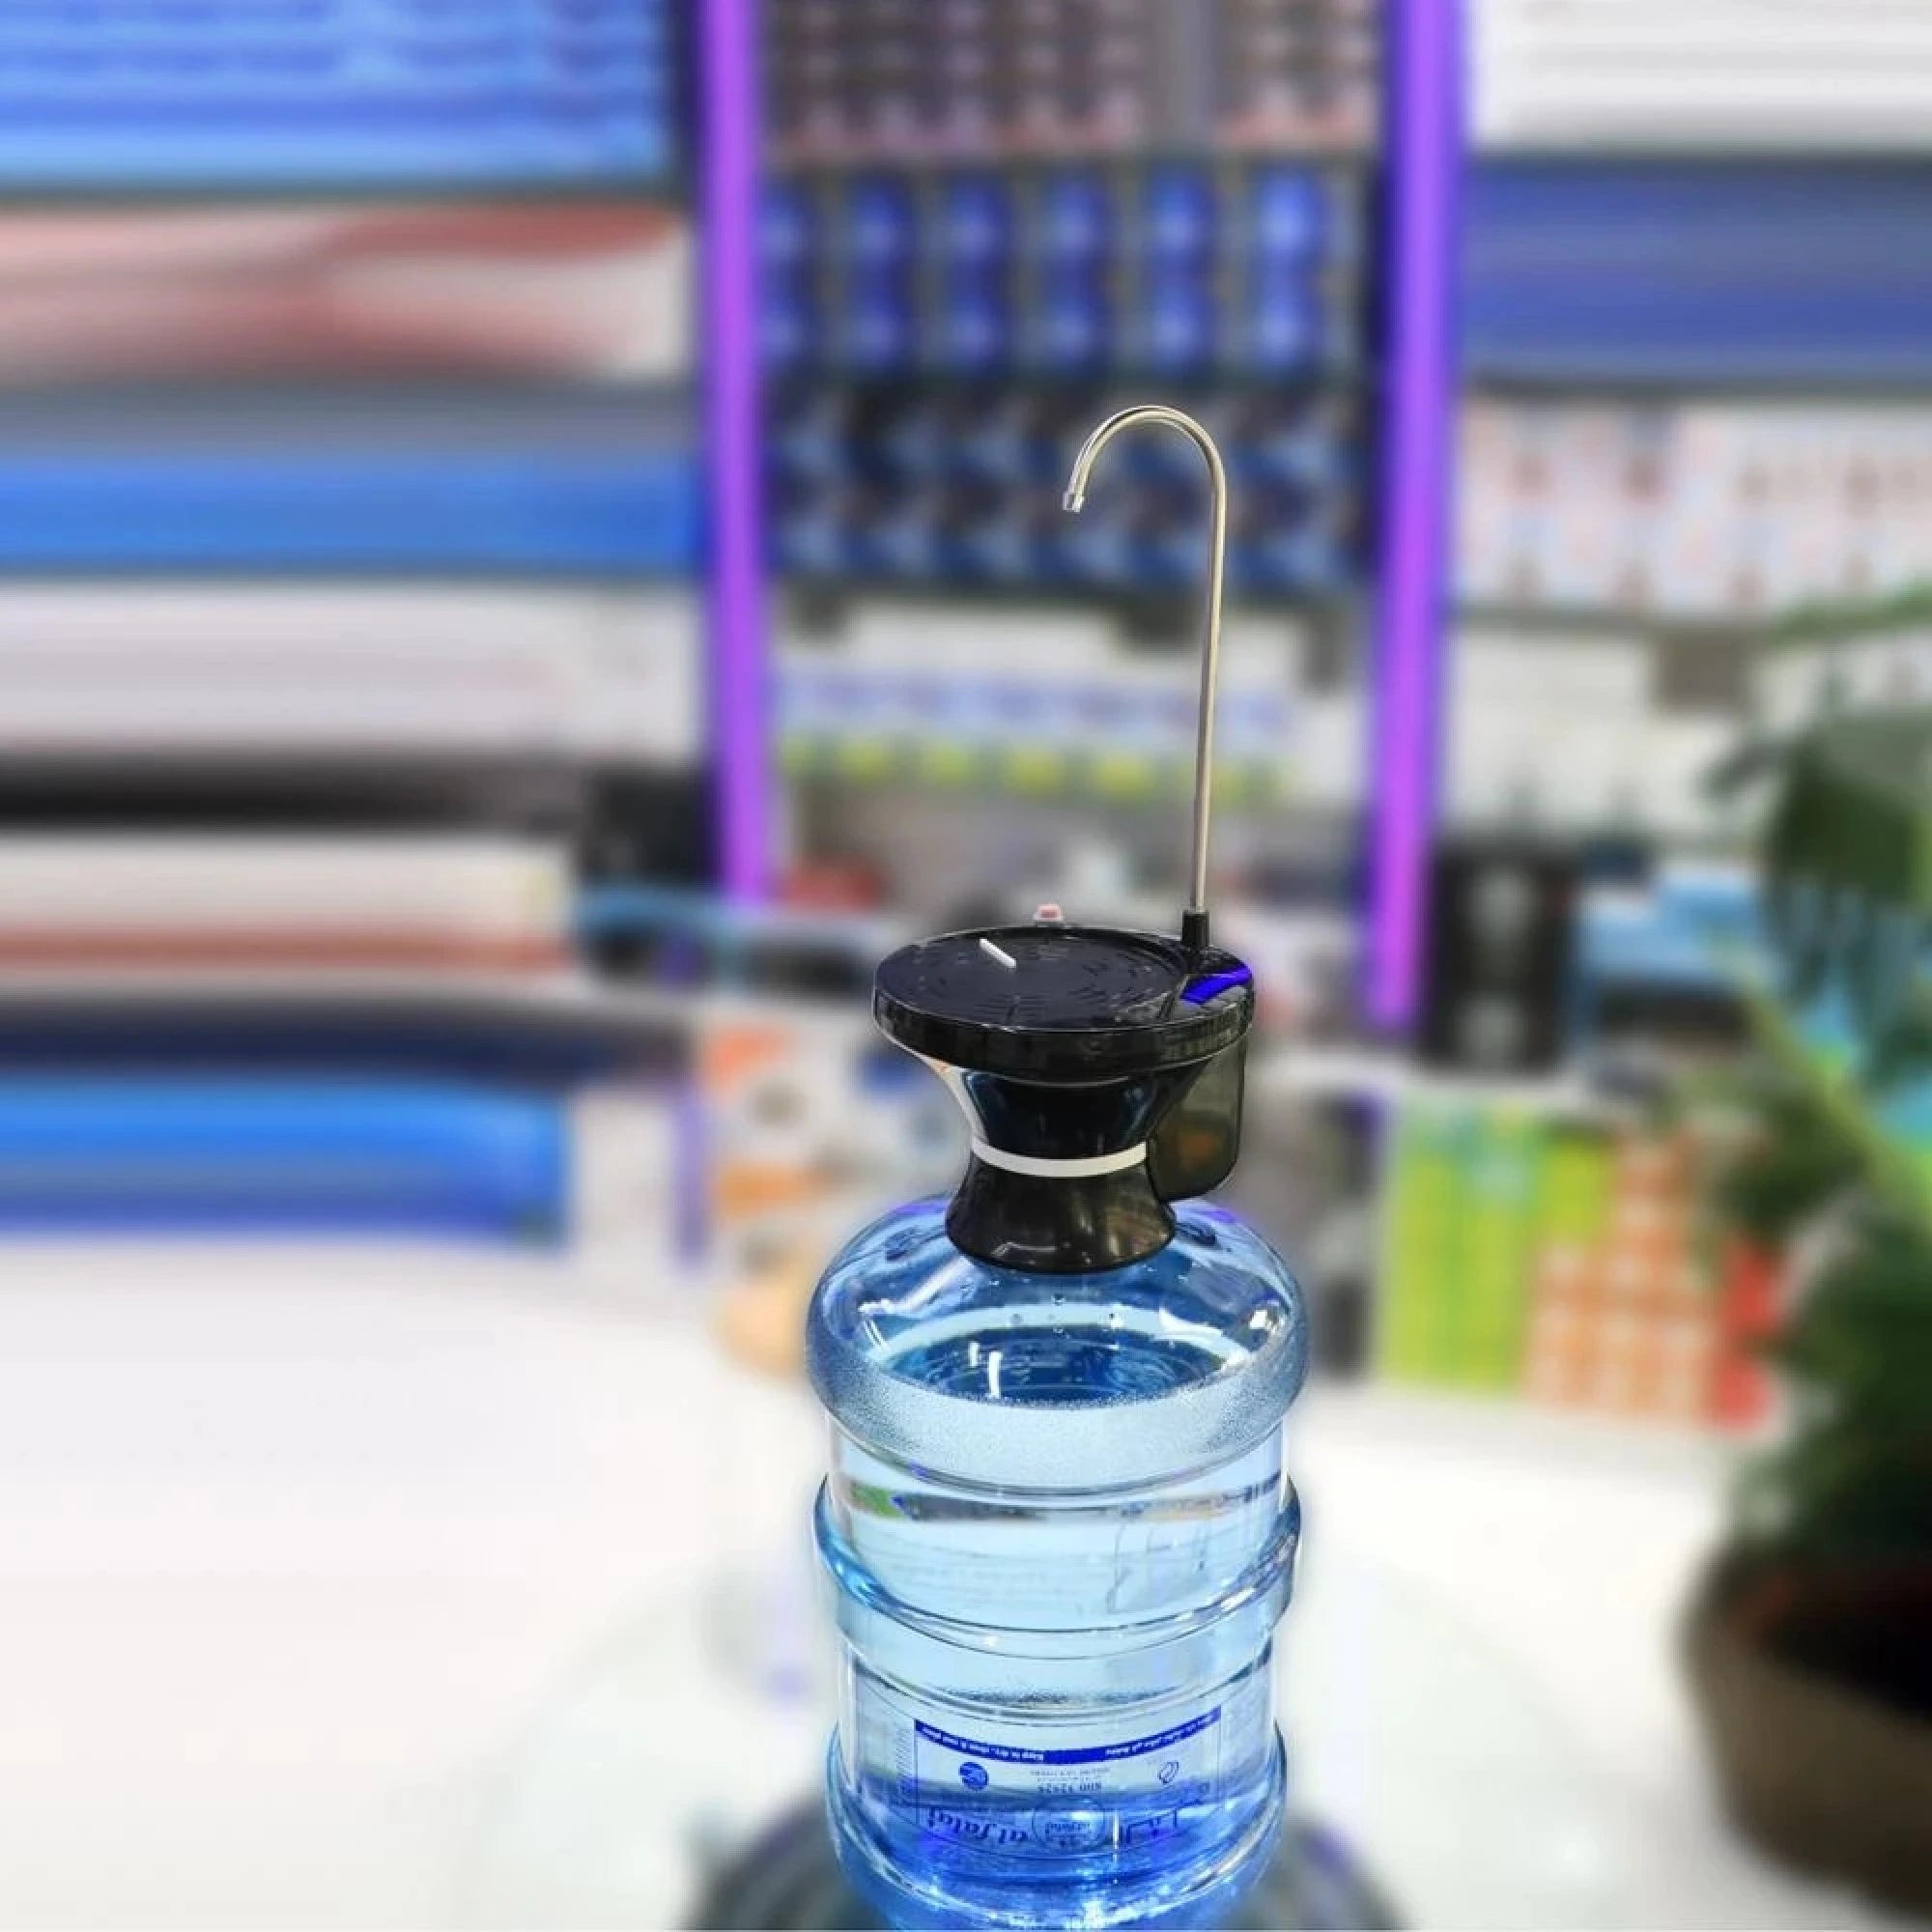 Pompa electrica dozare apa, suport pentru pahar, ZSW-C06